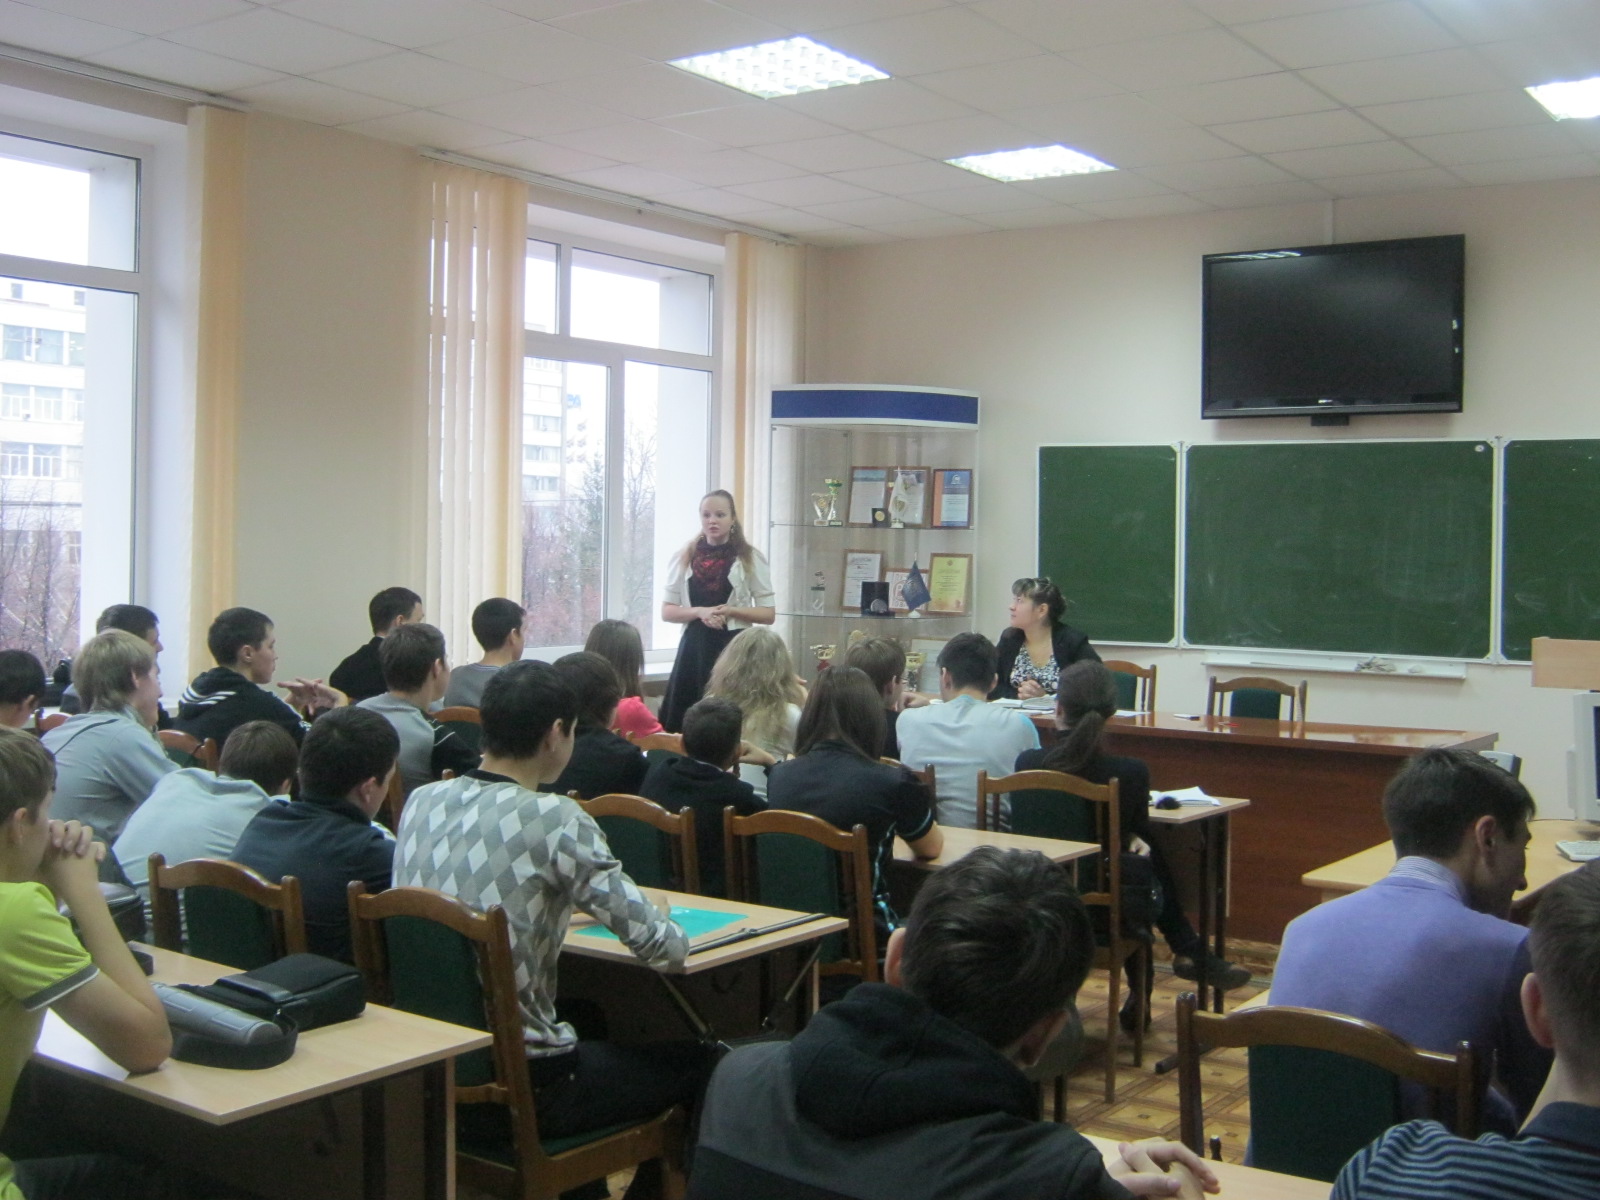 09:58 В рамках Единого информационного молодёжного дня состоялась встреча со студентами Чебоксарского техникума строительства и городского хозяйства